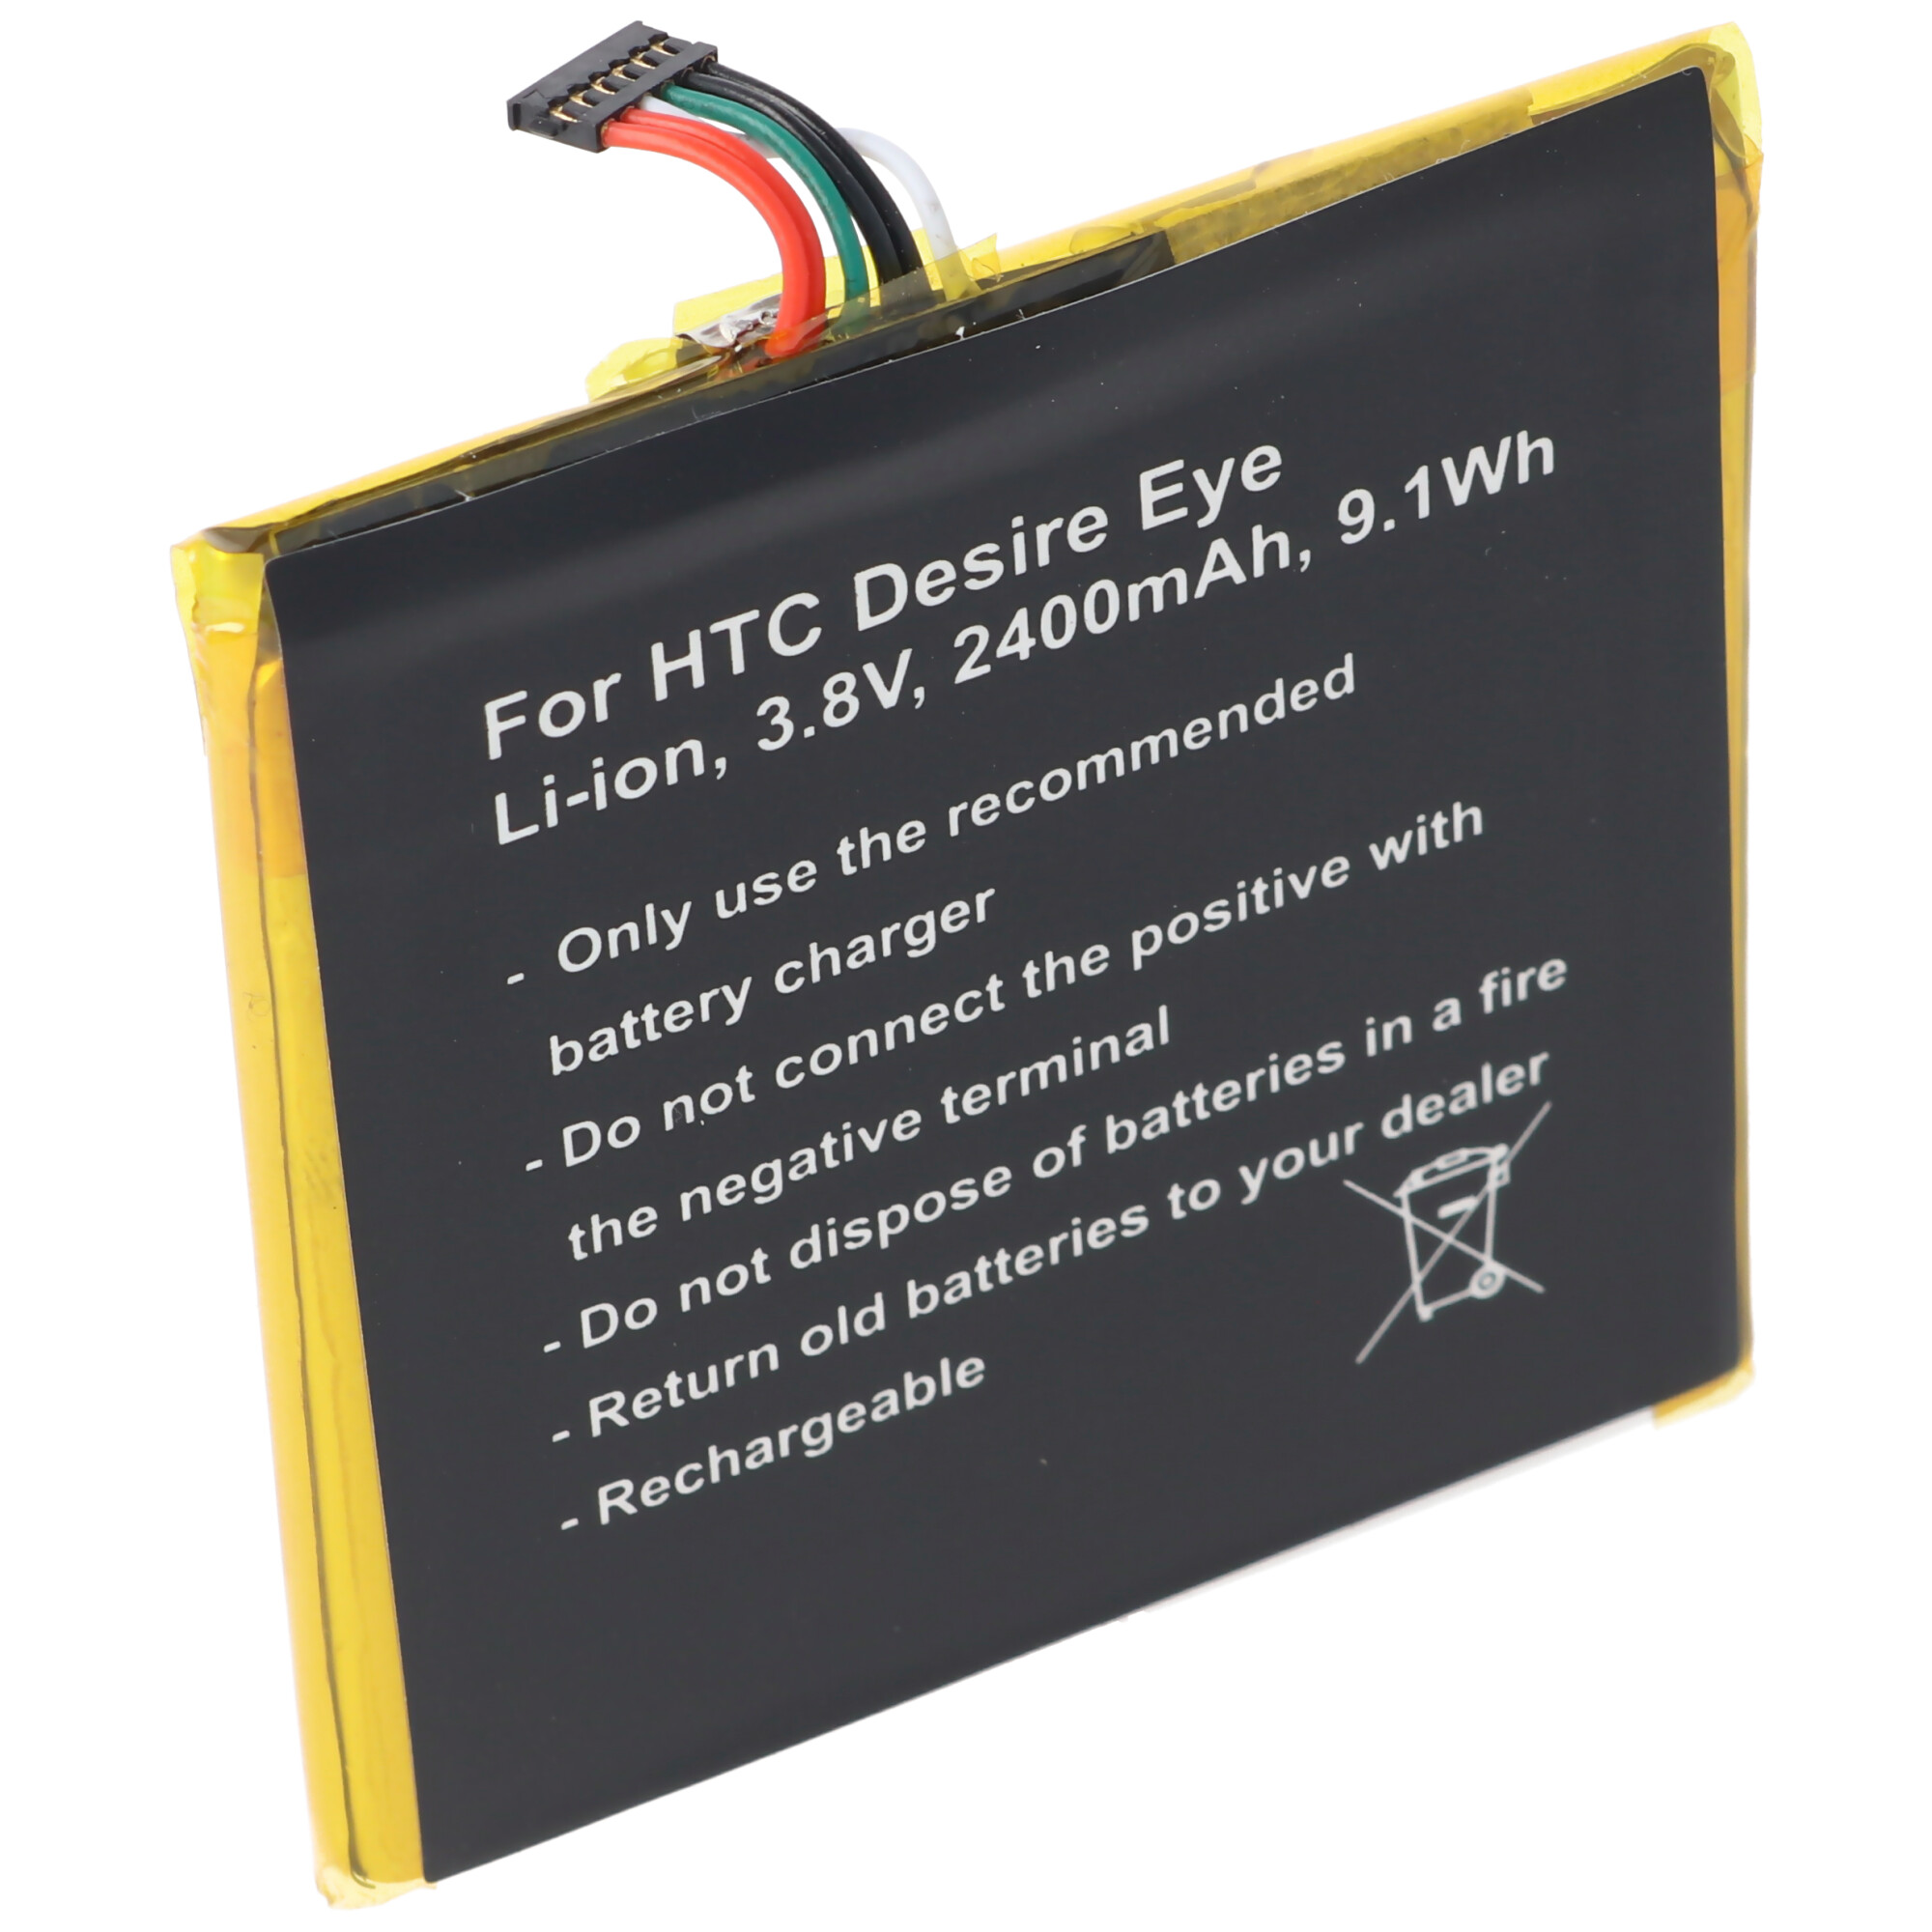 Akku passend für HTC Desire Eye, Li-Ion, 3,8V, 2400mAh, 9,1Wh, built-in, ohne Werkzeug